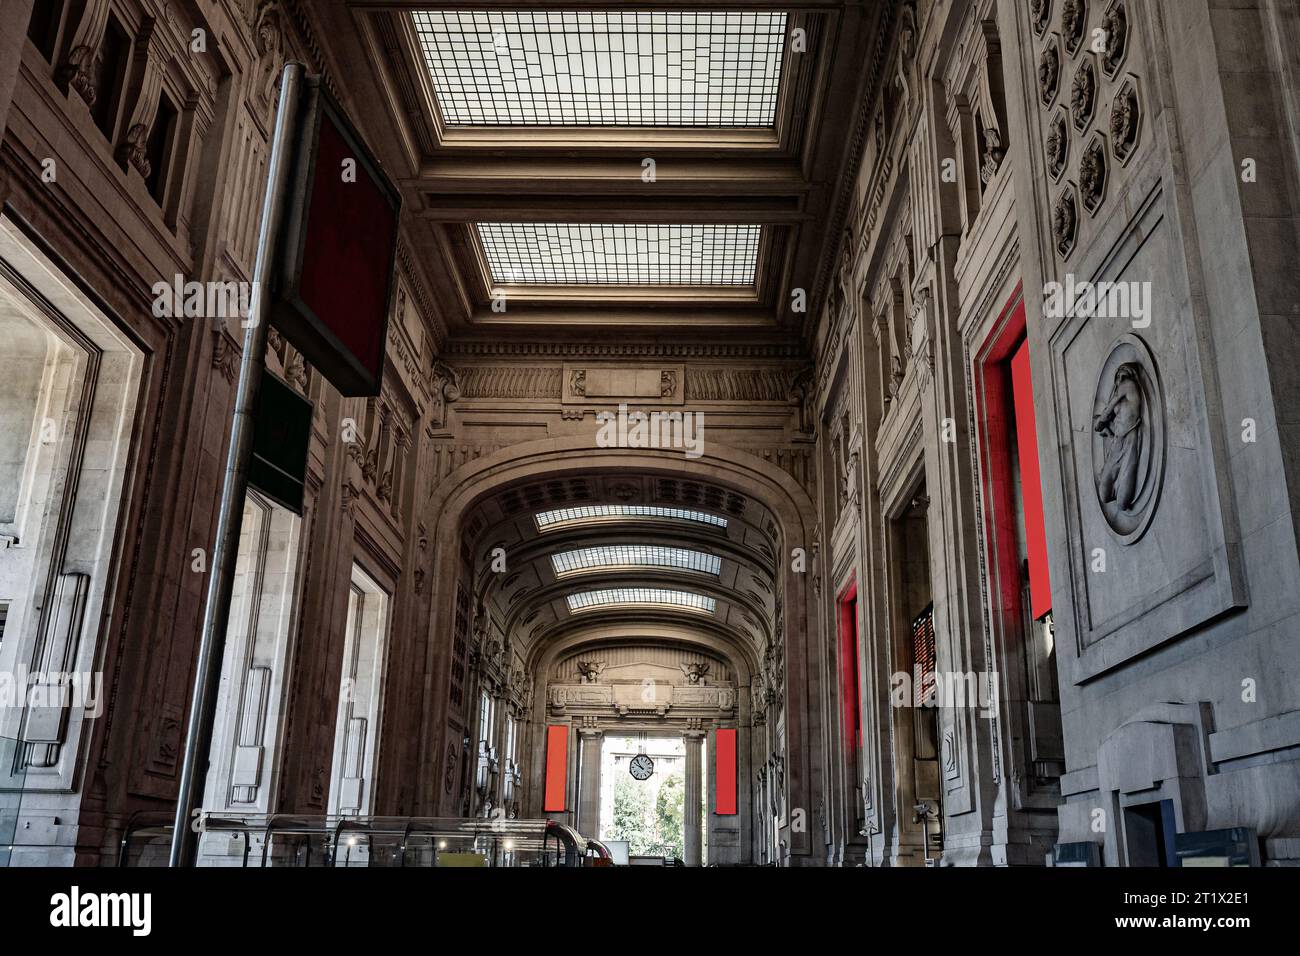 Milano centrale, Grand Central a Milano, Italia. Vecchia e più grande stazione ferroviaria d'Europa. Foto Stock